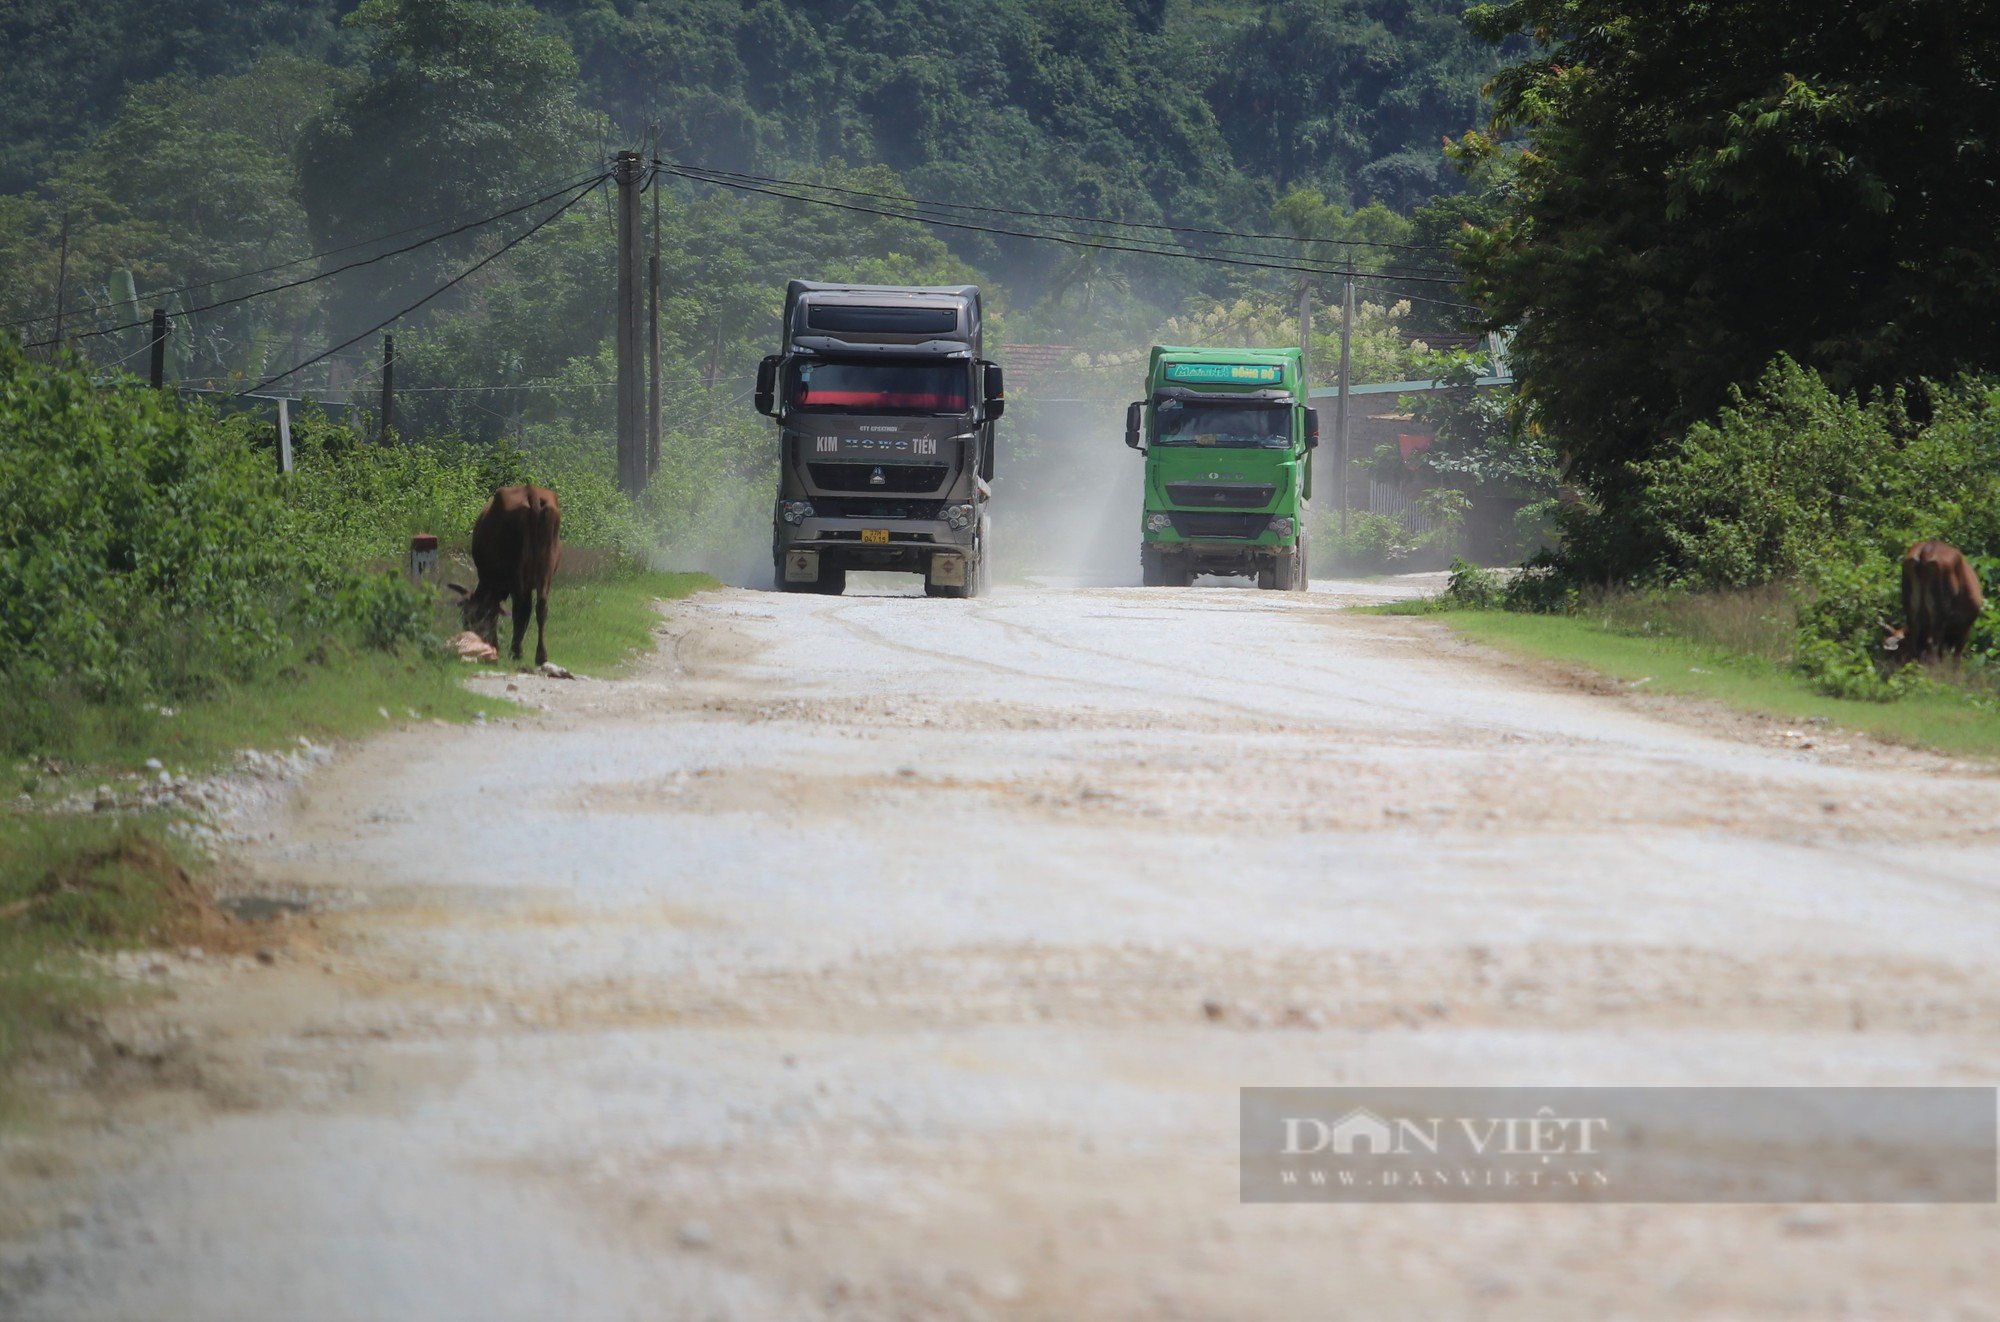 Tỉnh lộ 532 xuống cấp trầm trọng, dân thủ phủ khoáng sản ở Nghệ An khốn khổ đủ đường - Ảnh 1.